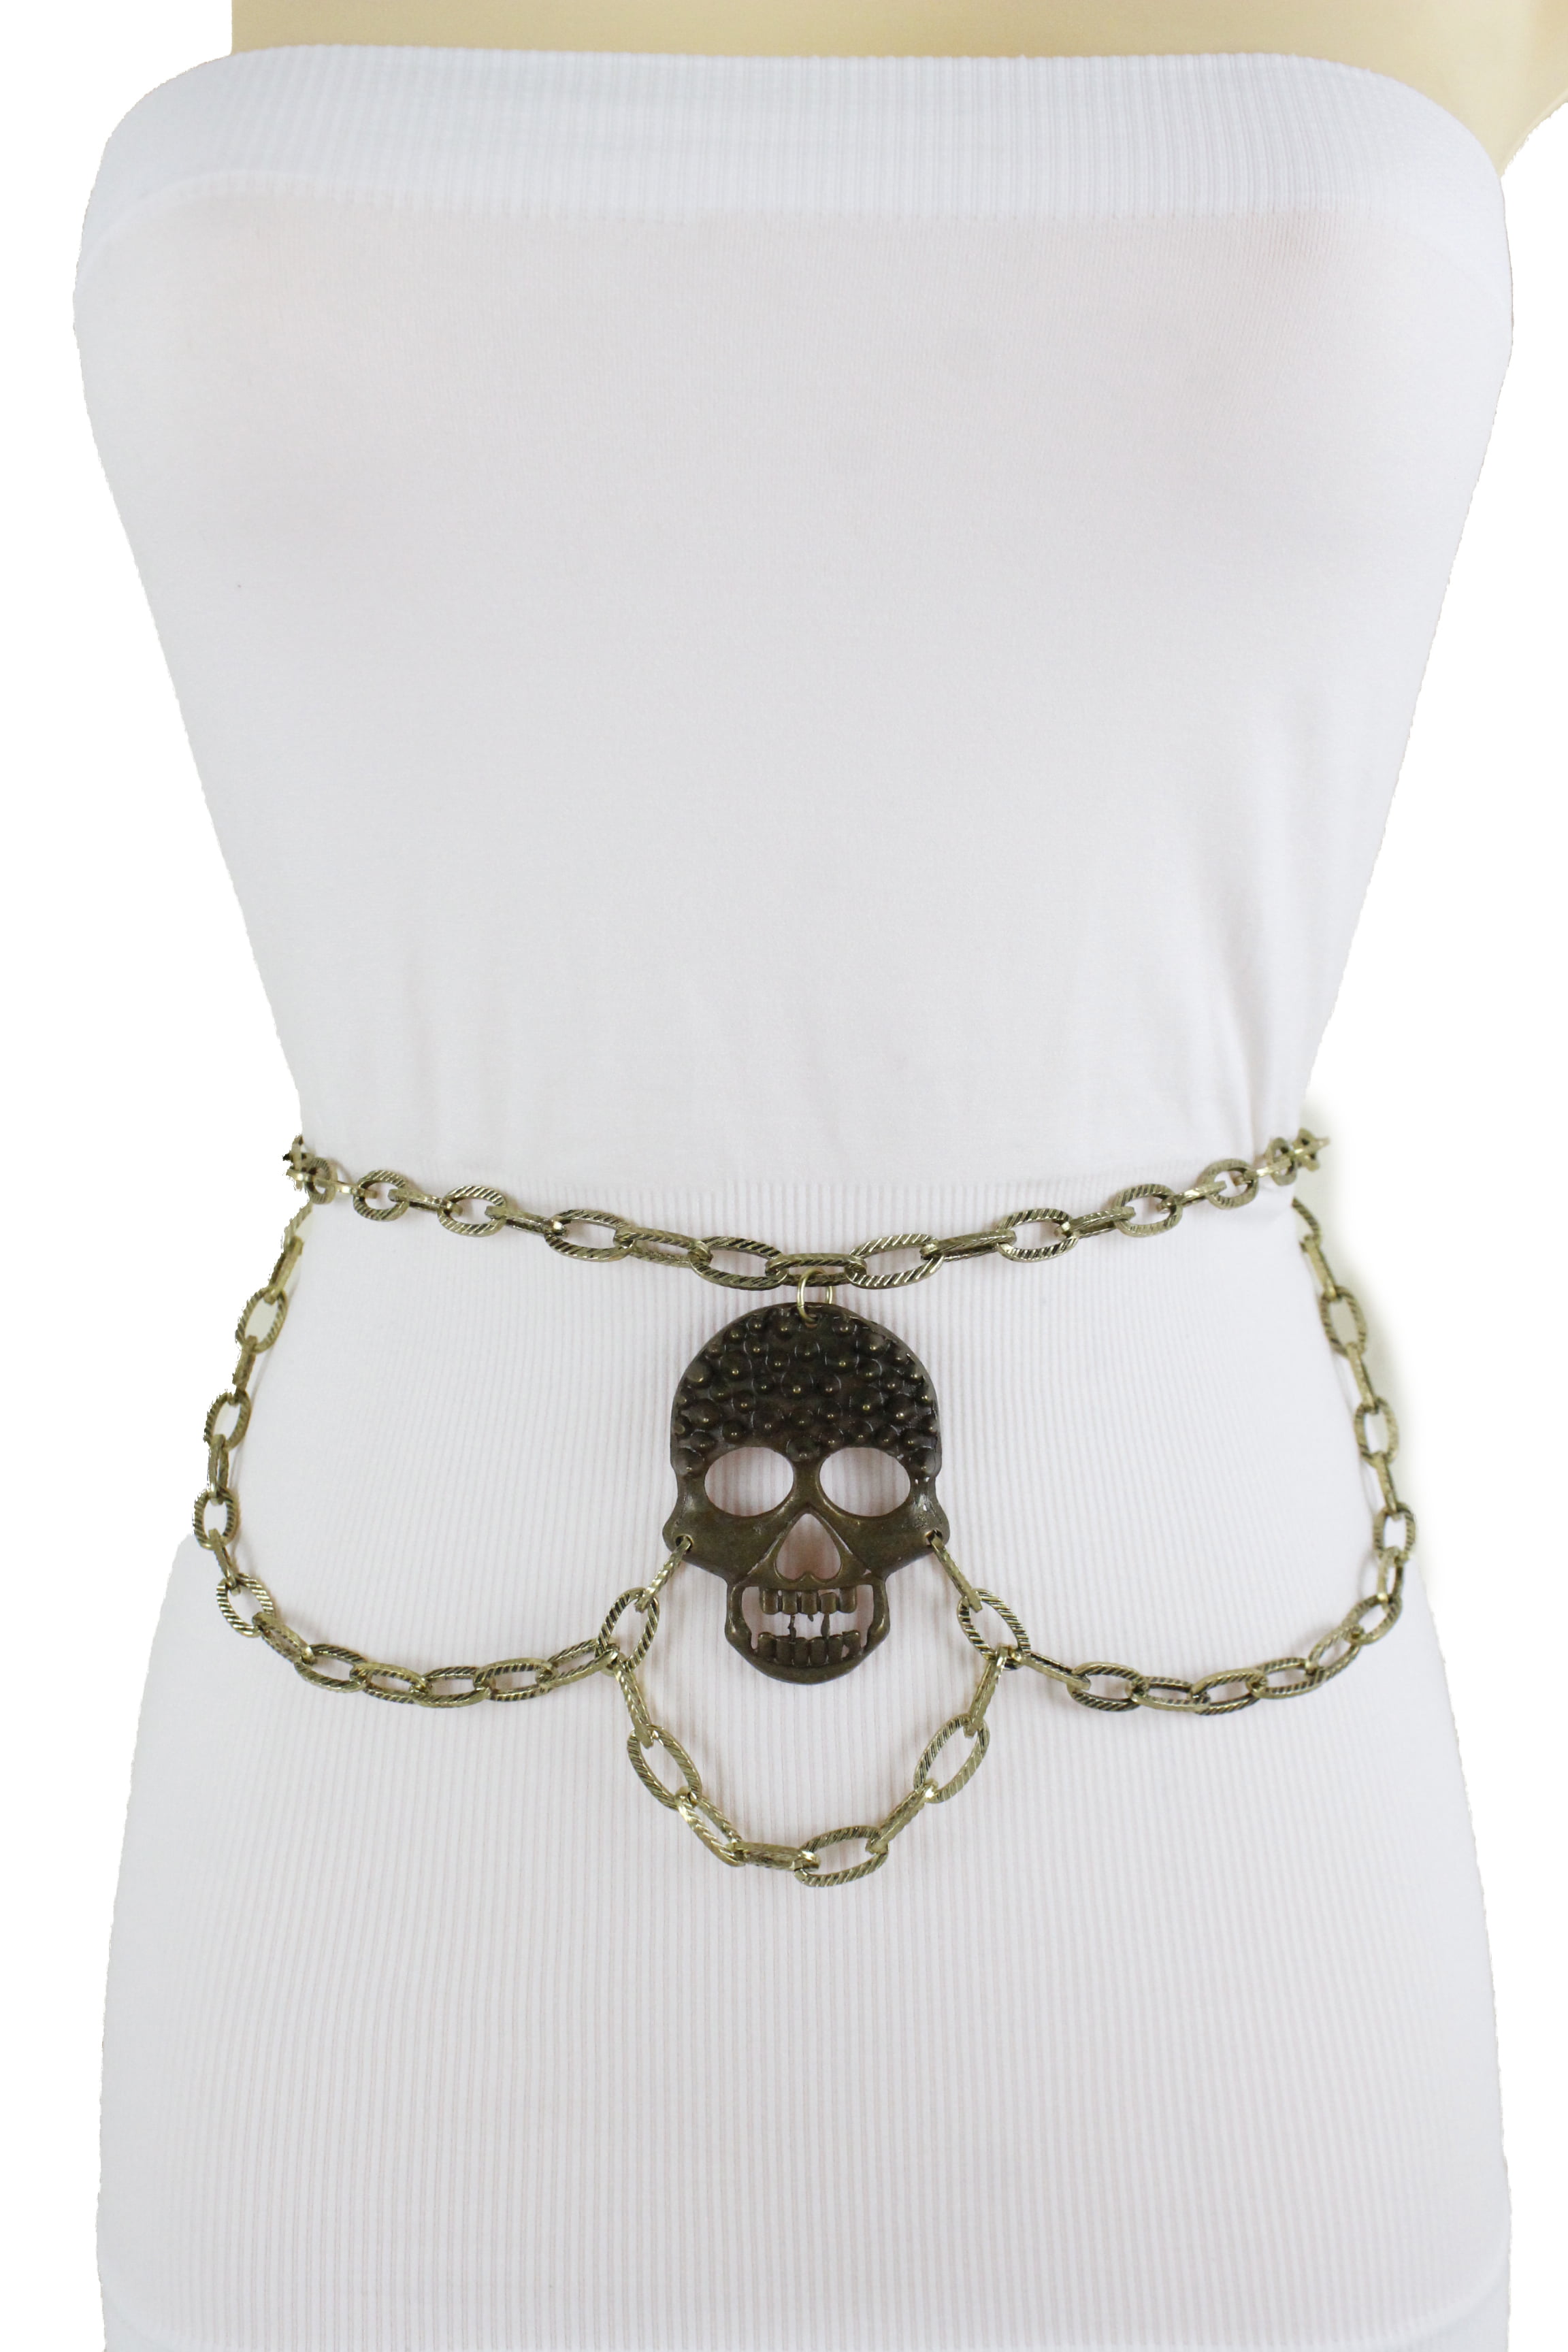 Women Black Metal Chain Biker Goth Rocker Belt Skeleton Skull Cobra Snake M L XL 